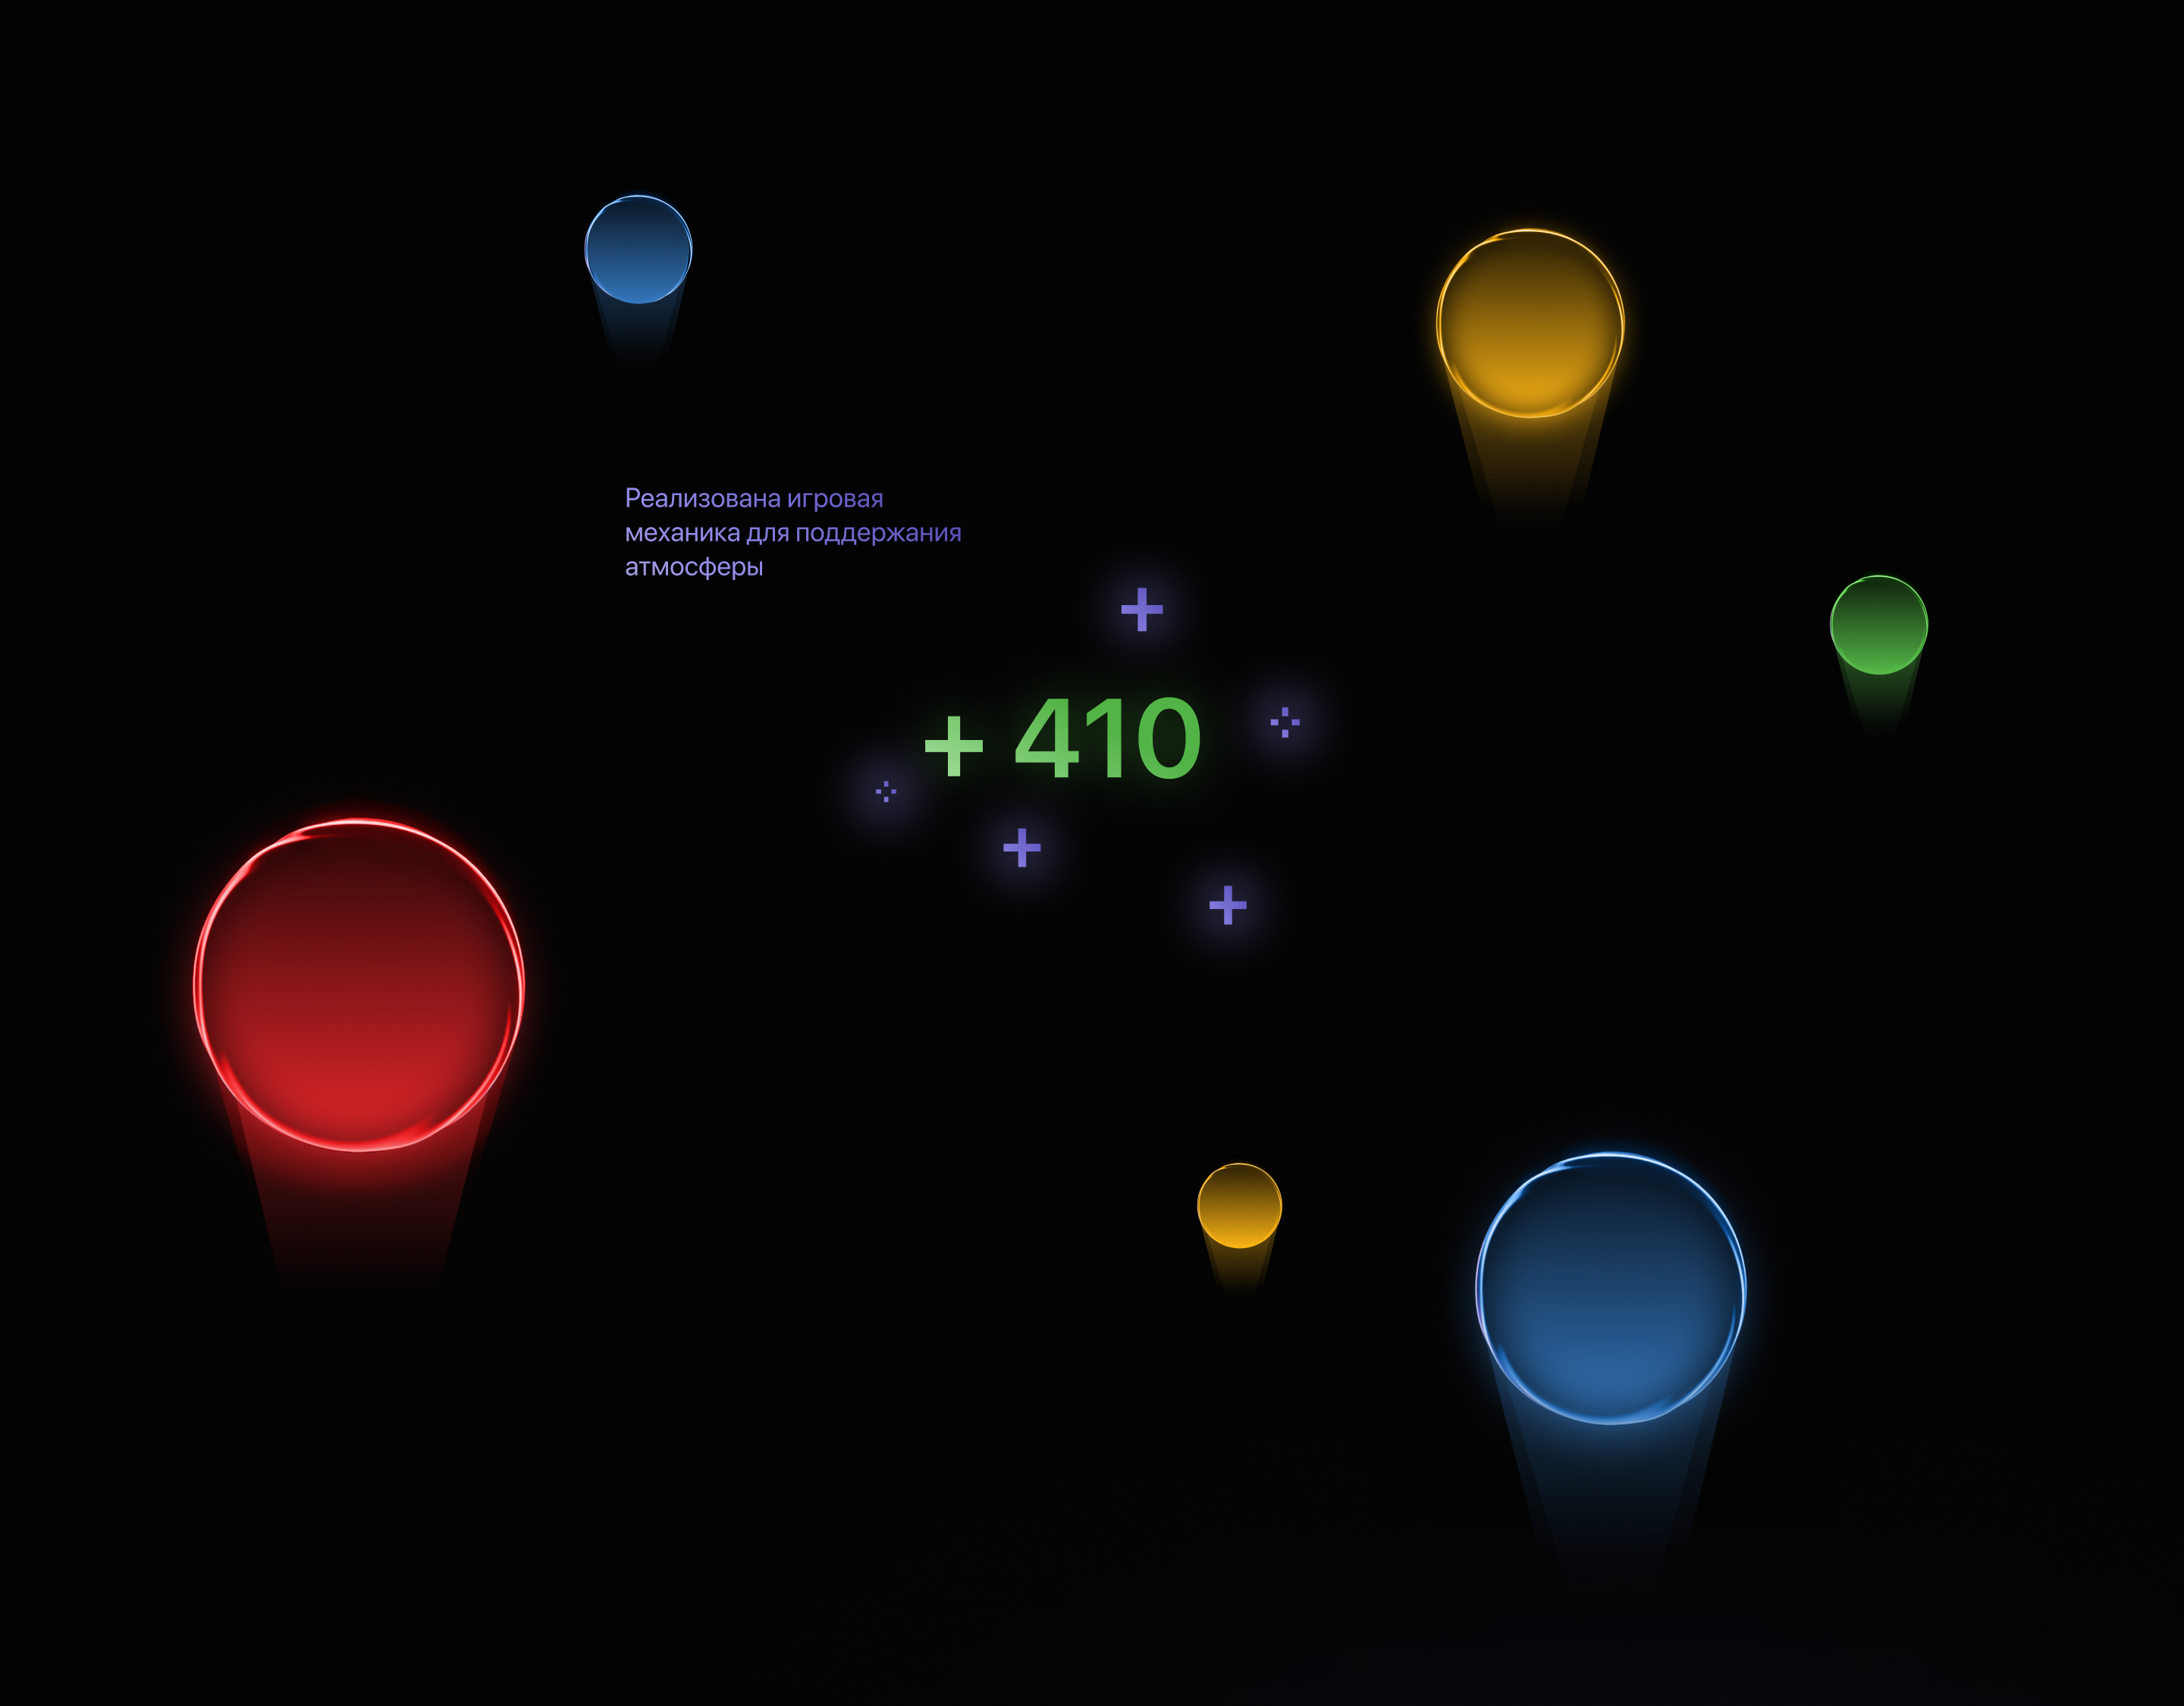 Разработка сайта gamedev студии — Изображение №7 — Интерфейсы на Dprofile